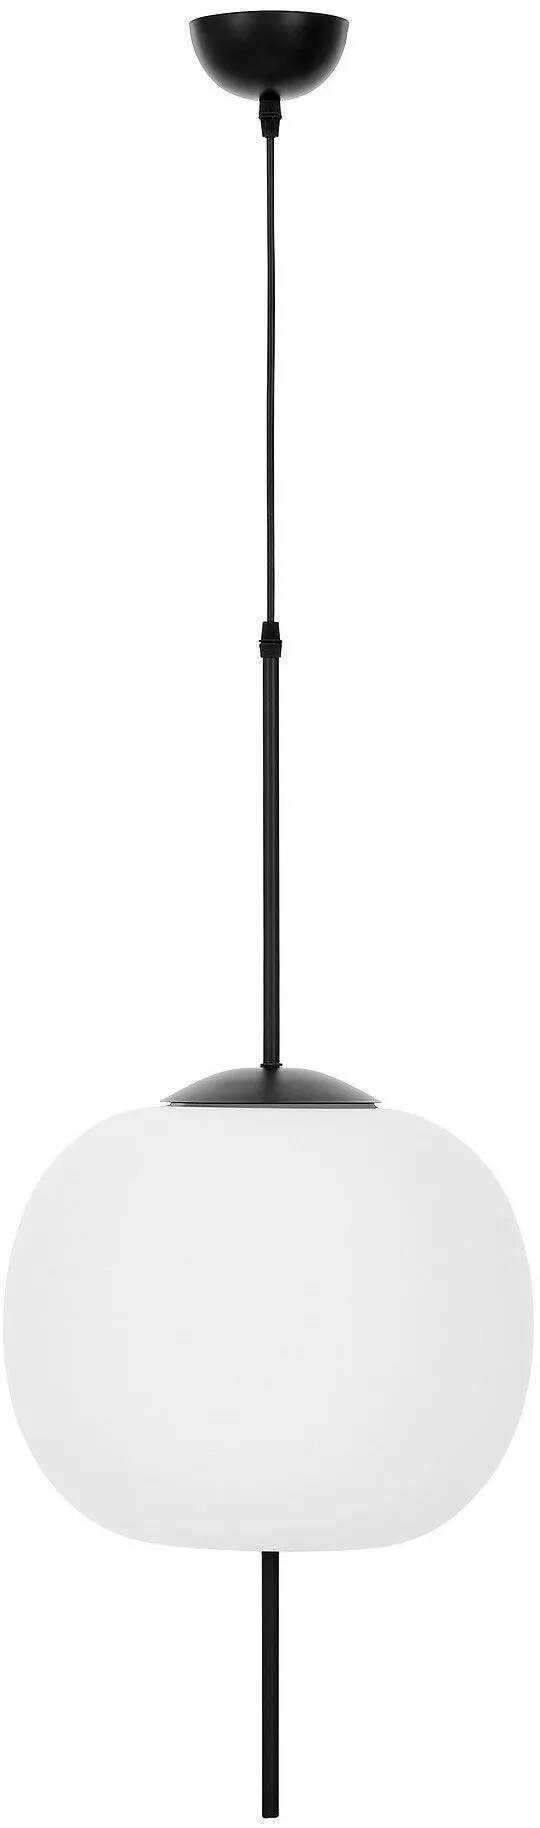 Lampe suspension en verre blanc et métal noir Ø33